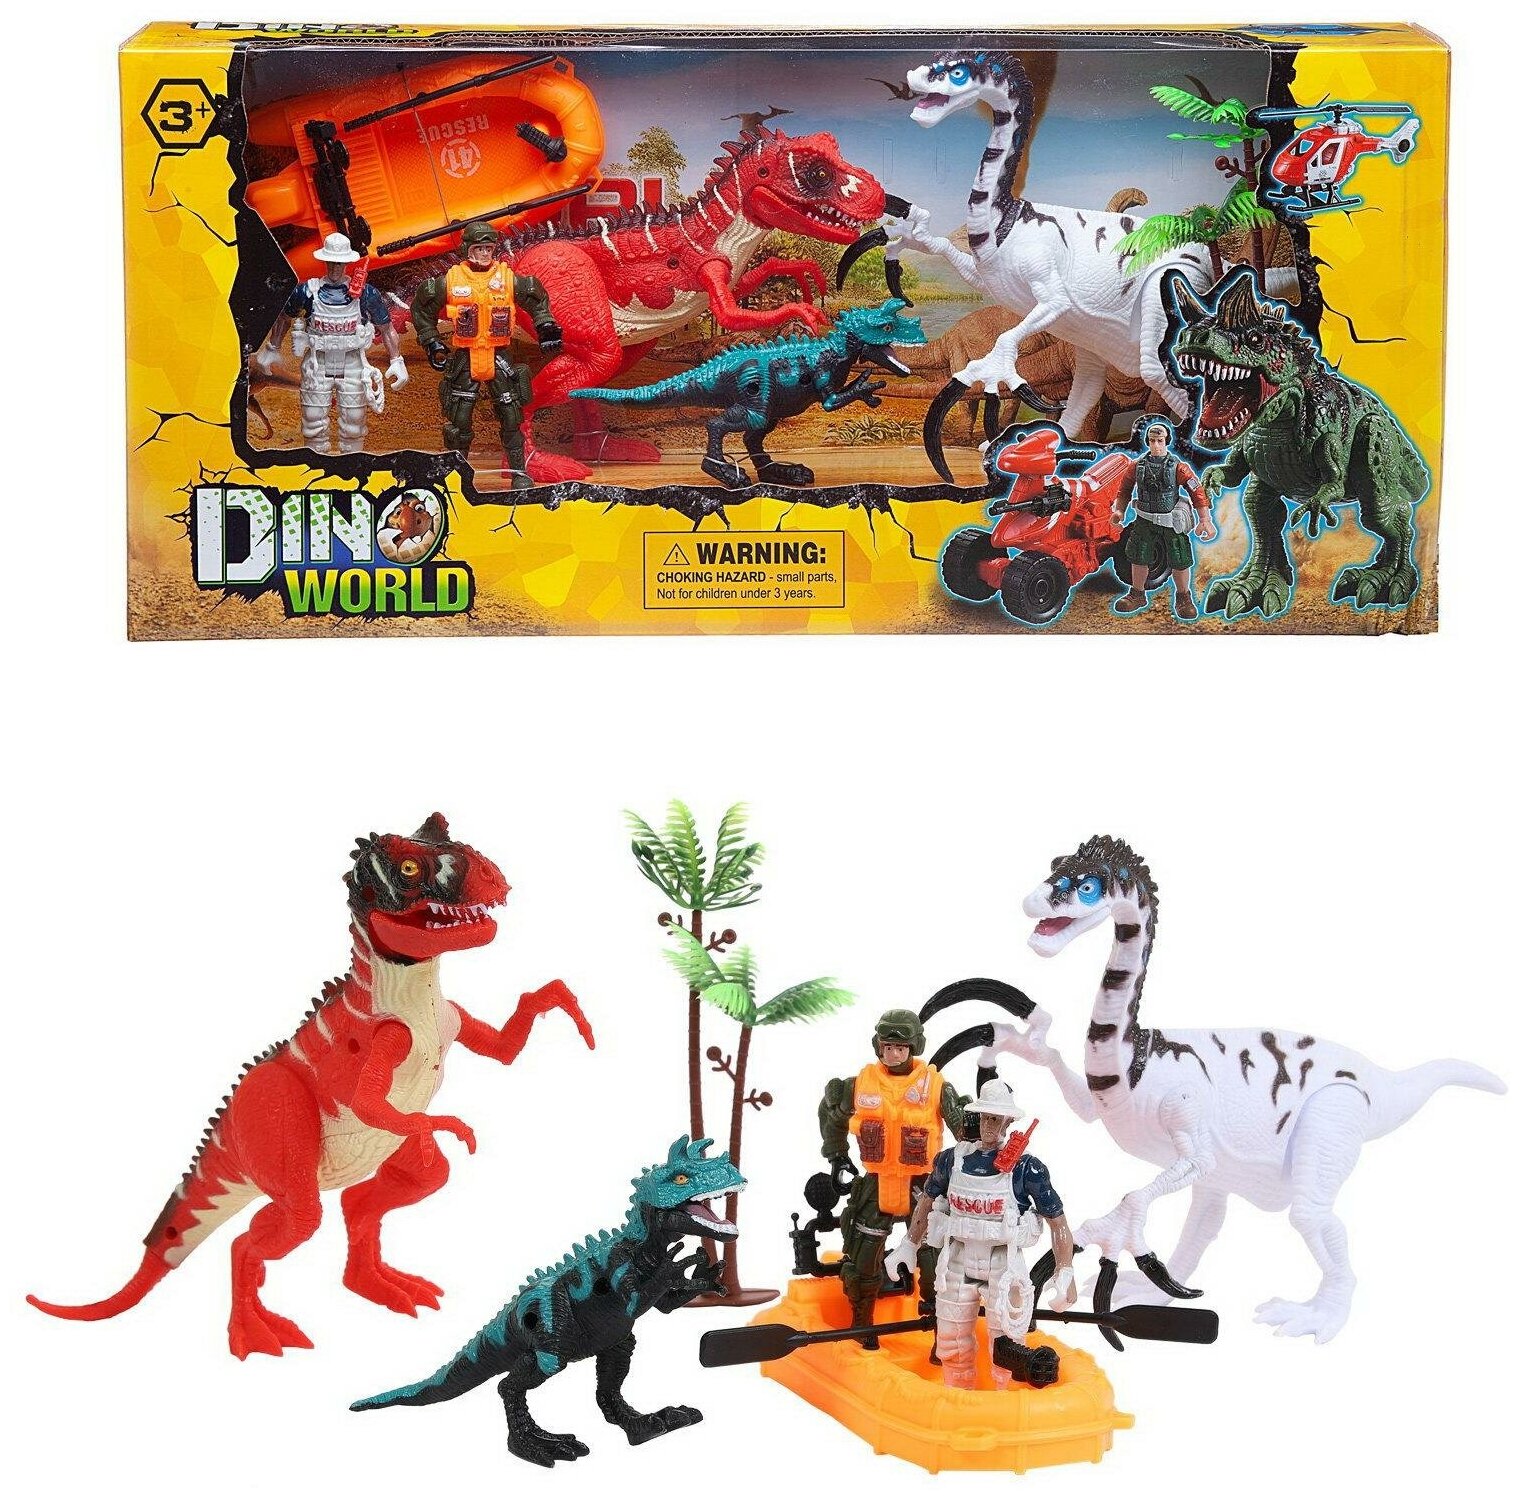 Игровой набор Junfa "Мир динозавров" (2 больших динозавра, маленький динозавр, 2 фигурки человека, лодка, аксессуары)